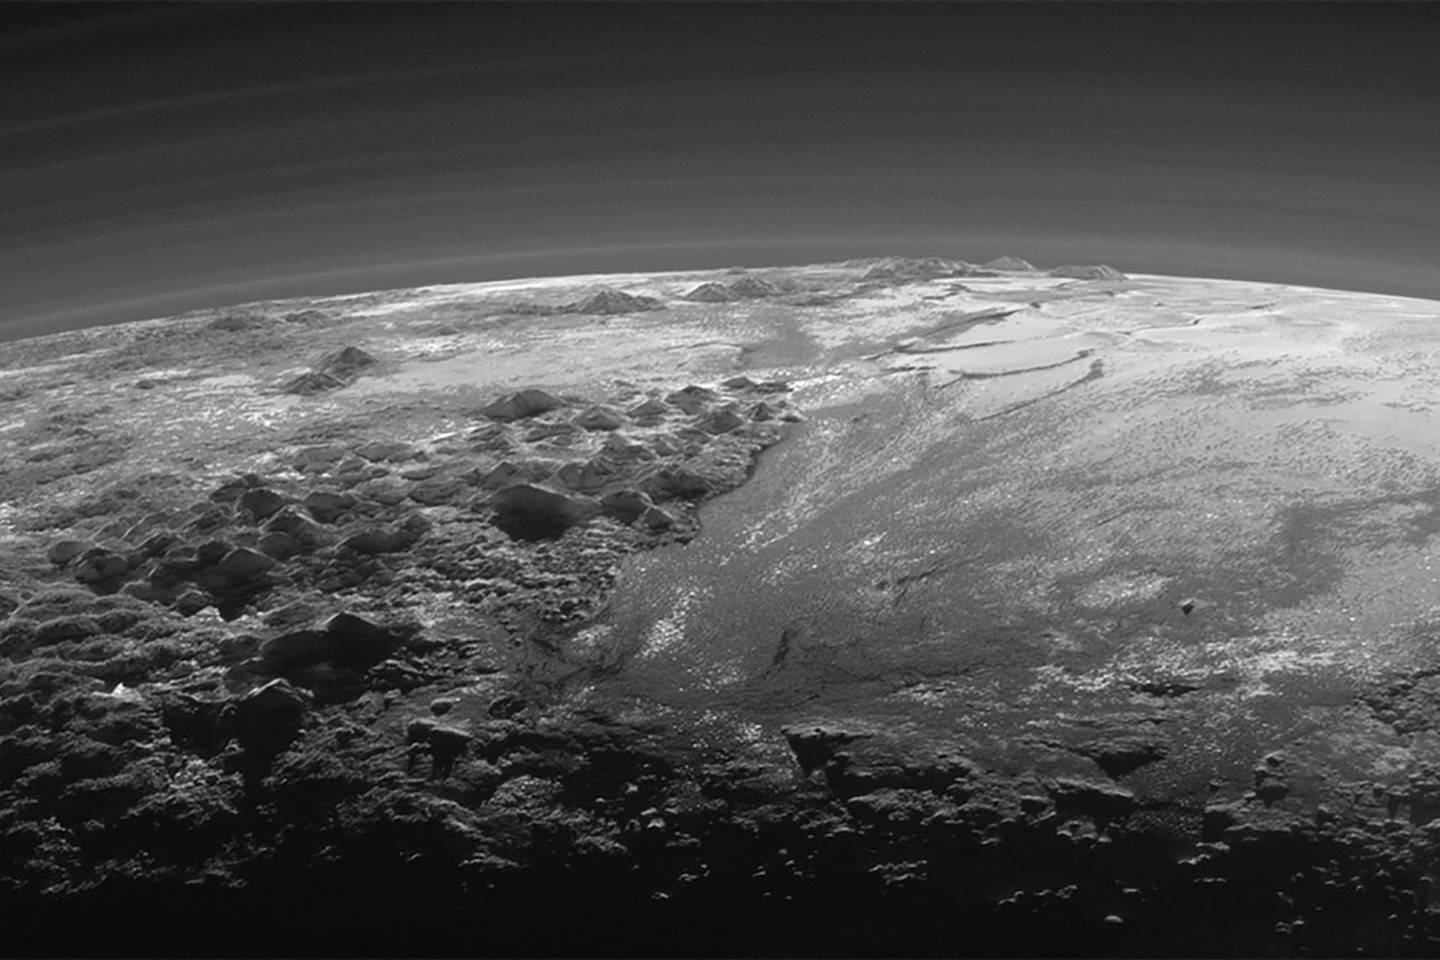 Manoma, kad Plutone vyksta geologiniai procesai, už kuriuos atsakingas po paviršiumi esantis vandenynas. Kol kas tiesioginių jo egzistavimo įrodymų nėra, bet ši versija įtikinamiausiai paaiškina paviršiaus ypatumus.<br>NASA nuotr.